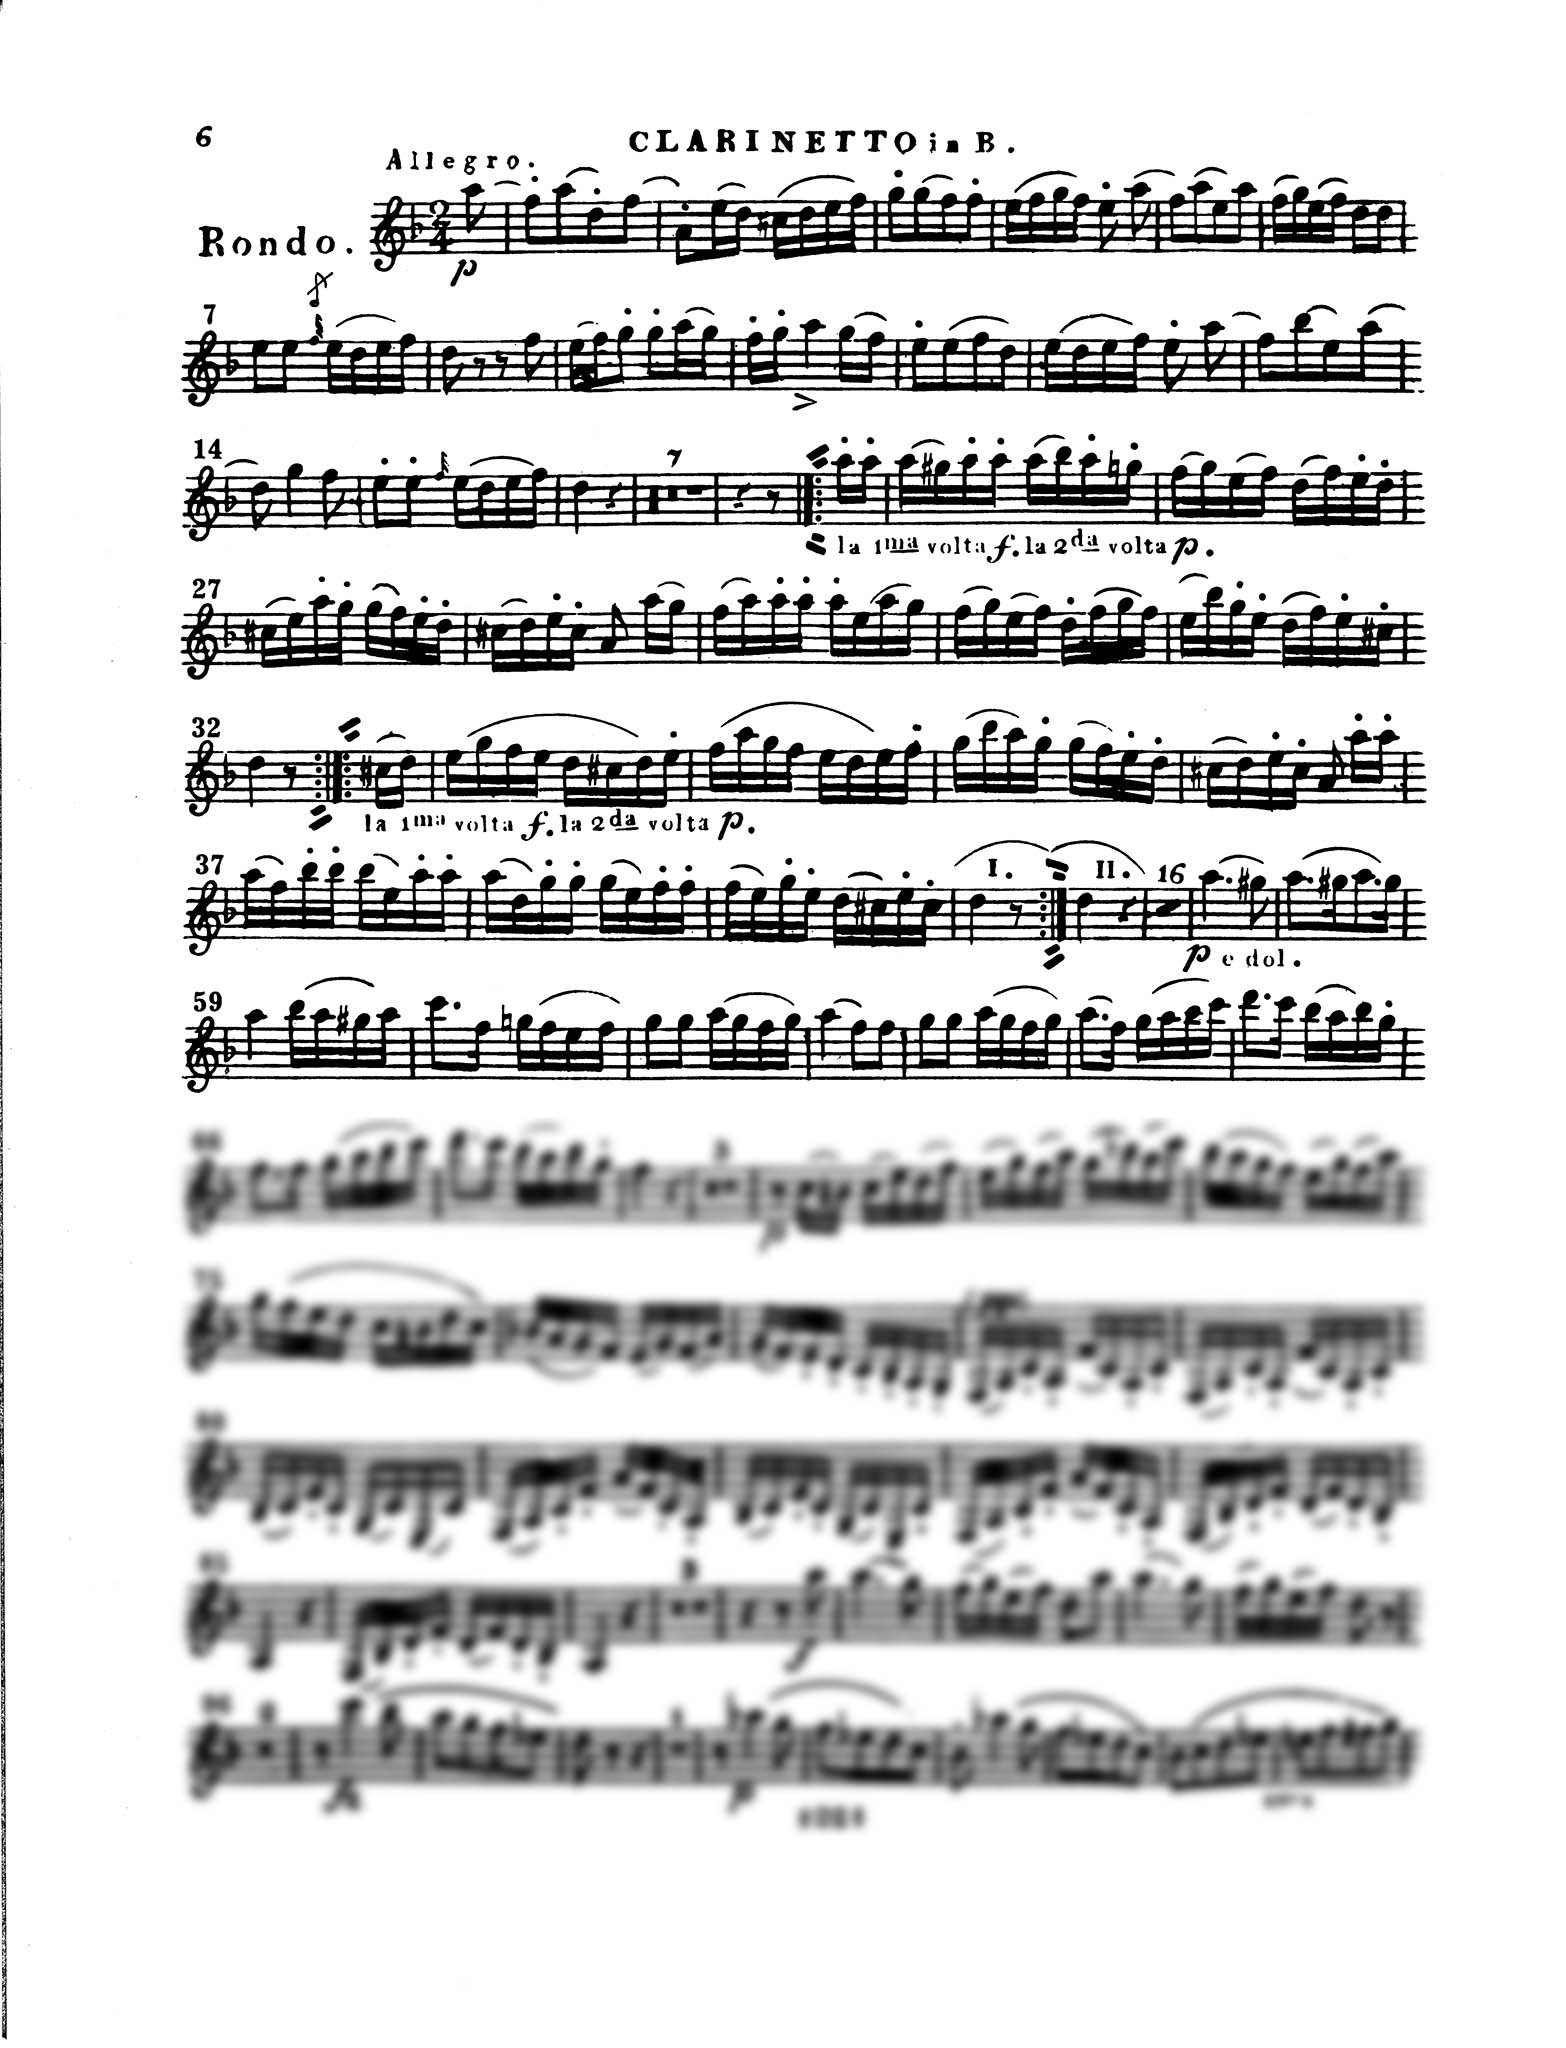 Clarinet Quartet No. 2 in C Minor, Op. 4 - Movement 3